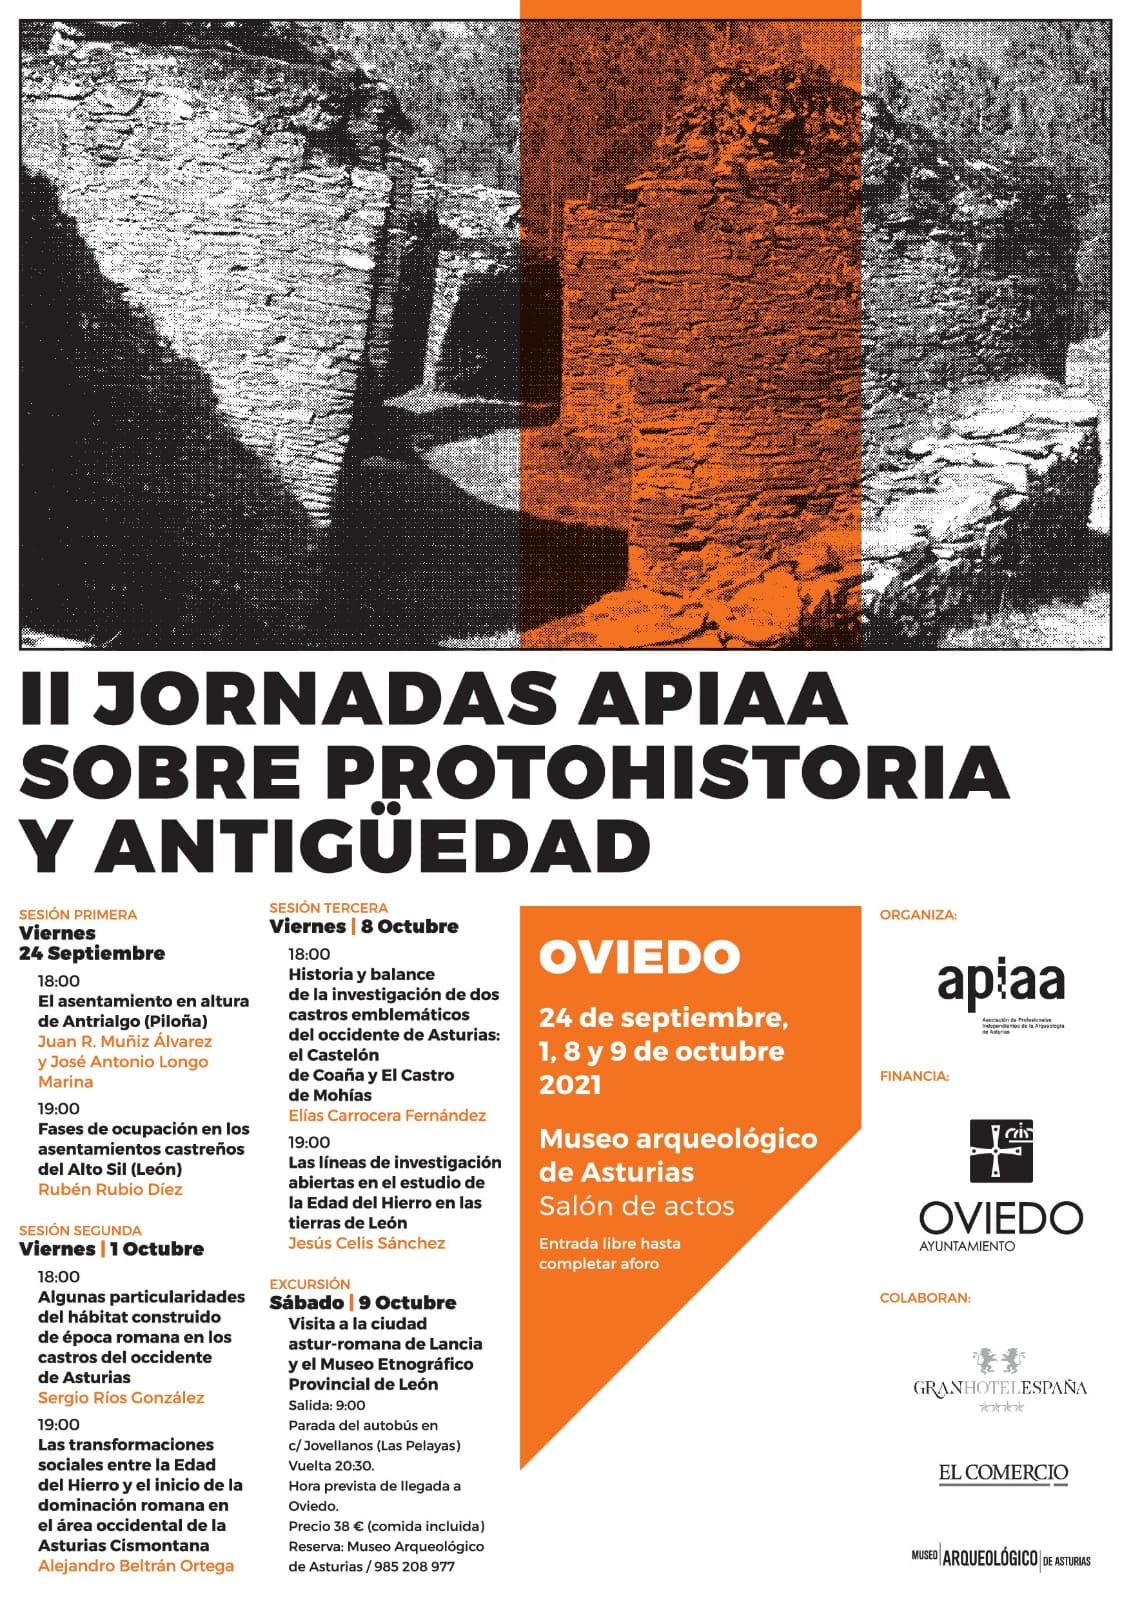 Resultados de excavaciones: El asentamiento en altura de Antrialgo (Piloña)